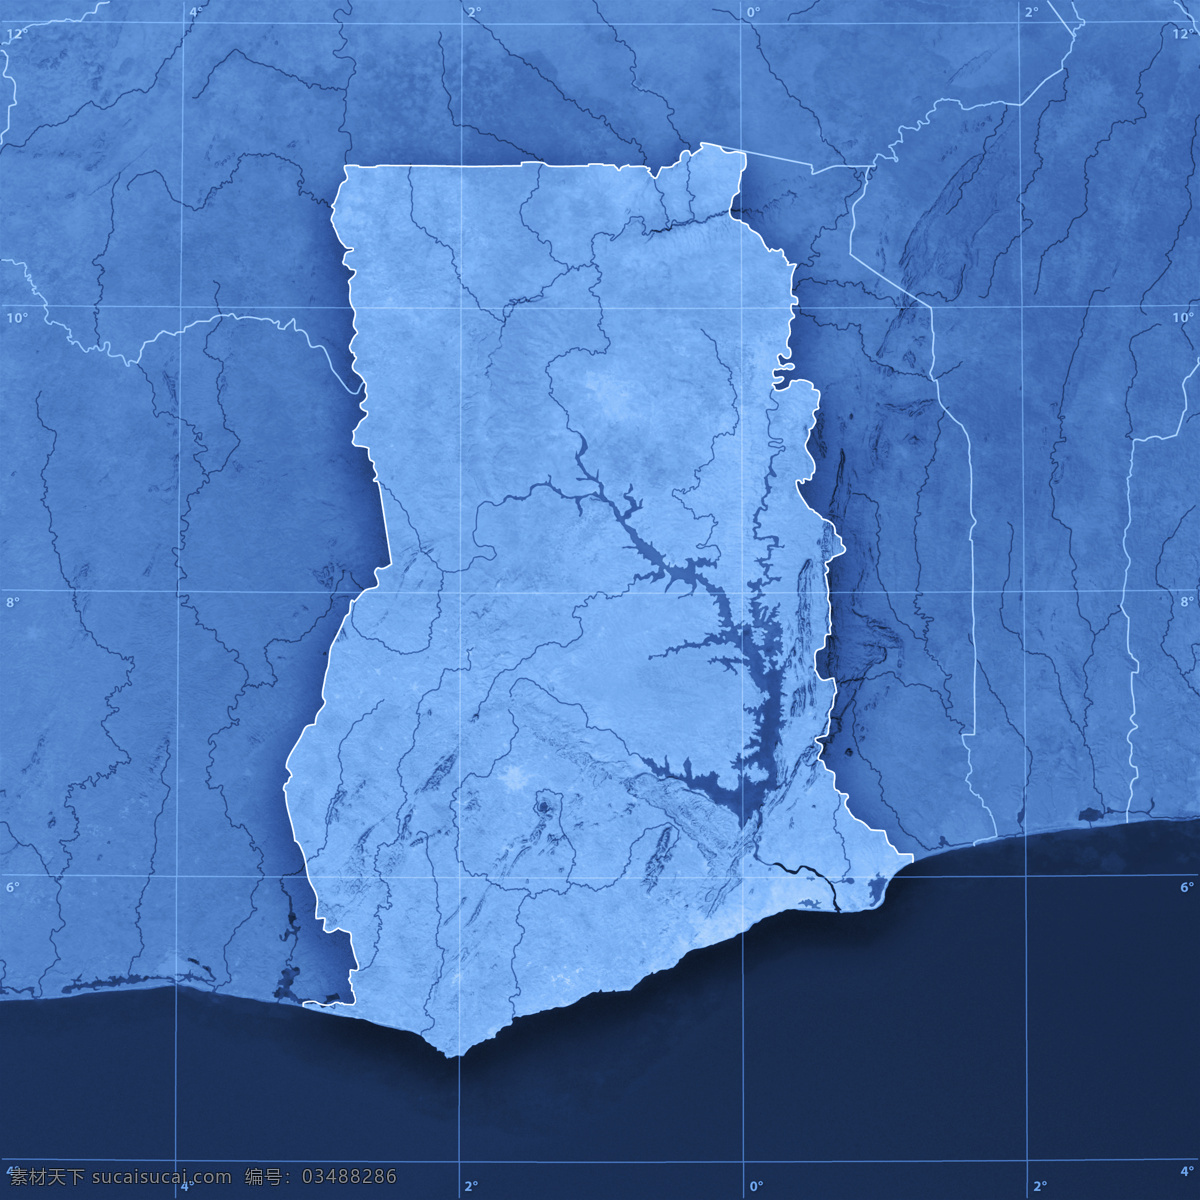 地图 蓝色地图 地图模板 经线 纬线 经度 纬度 办公学习 其他类别 生活百科